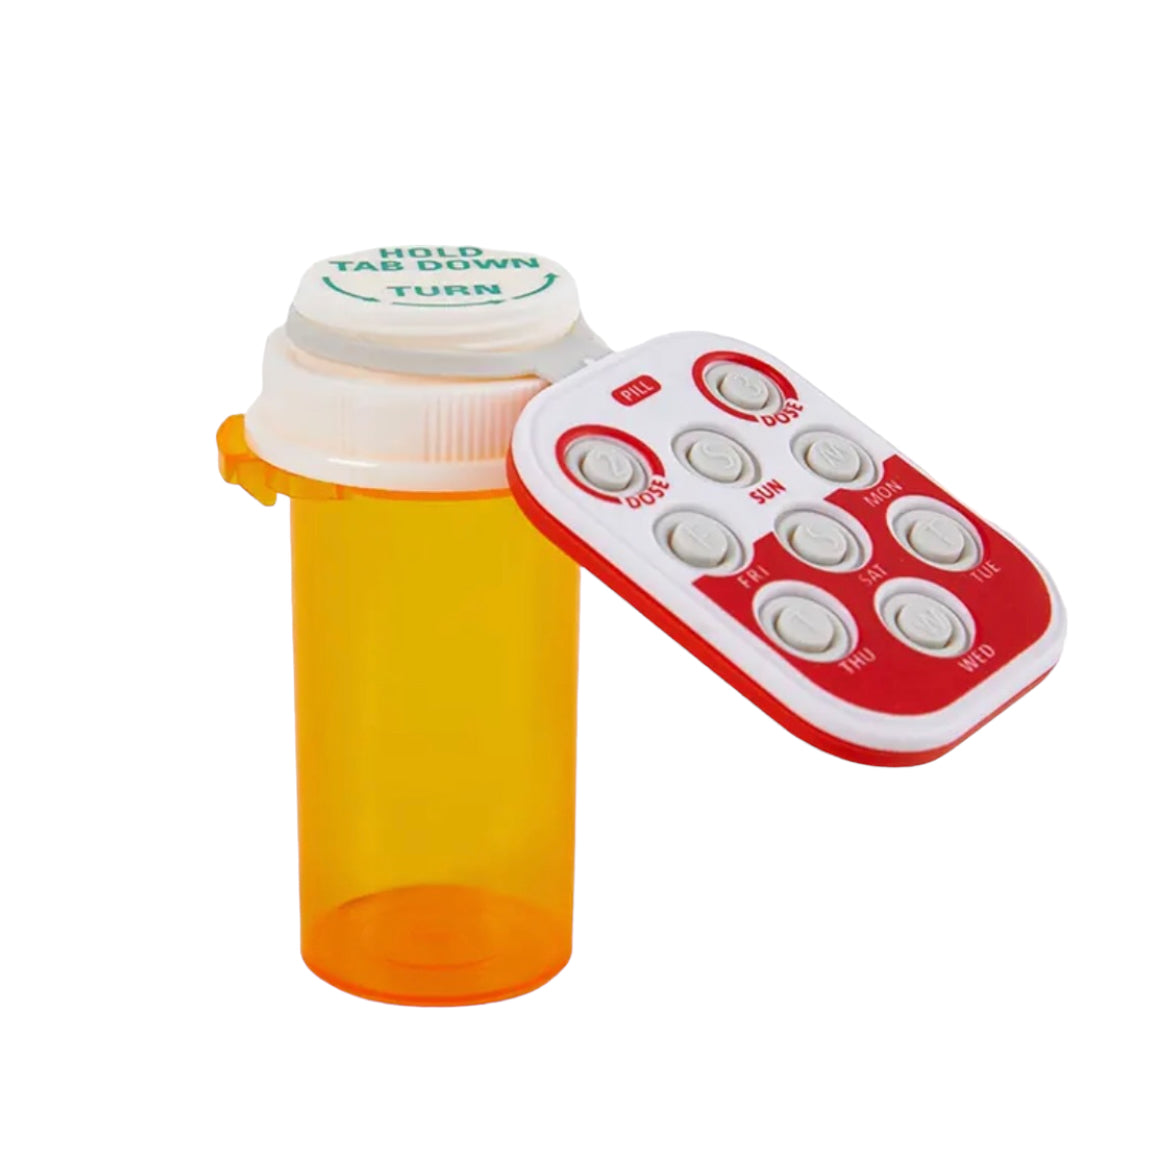 Pill + Medication Tracker